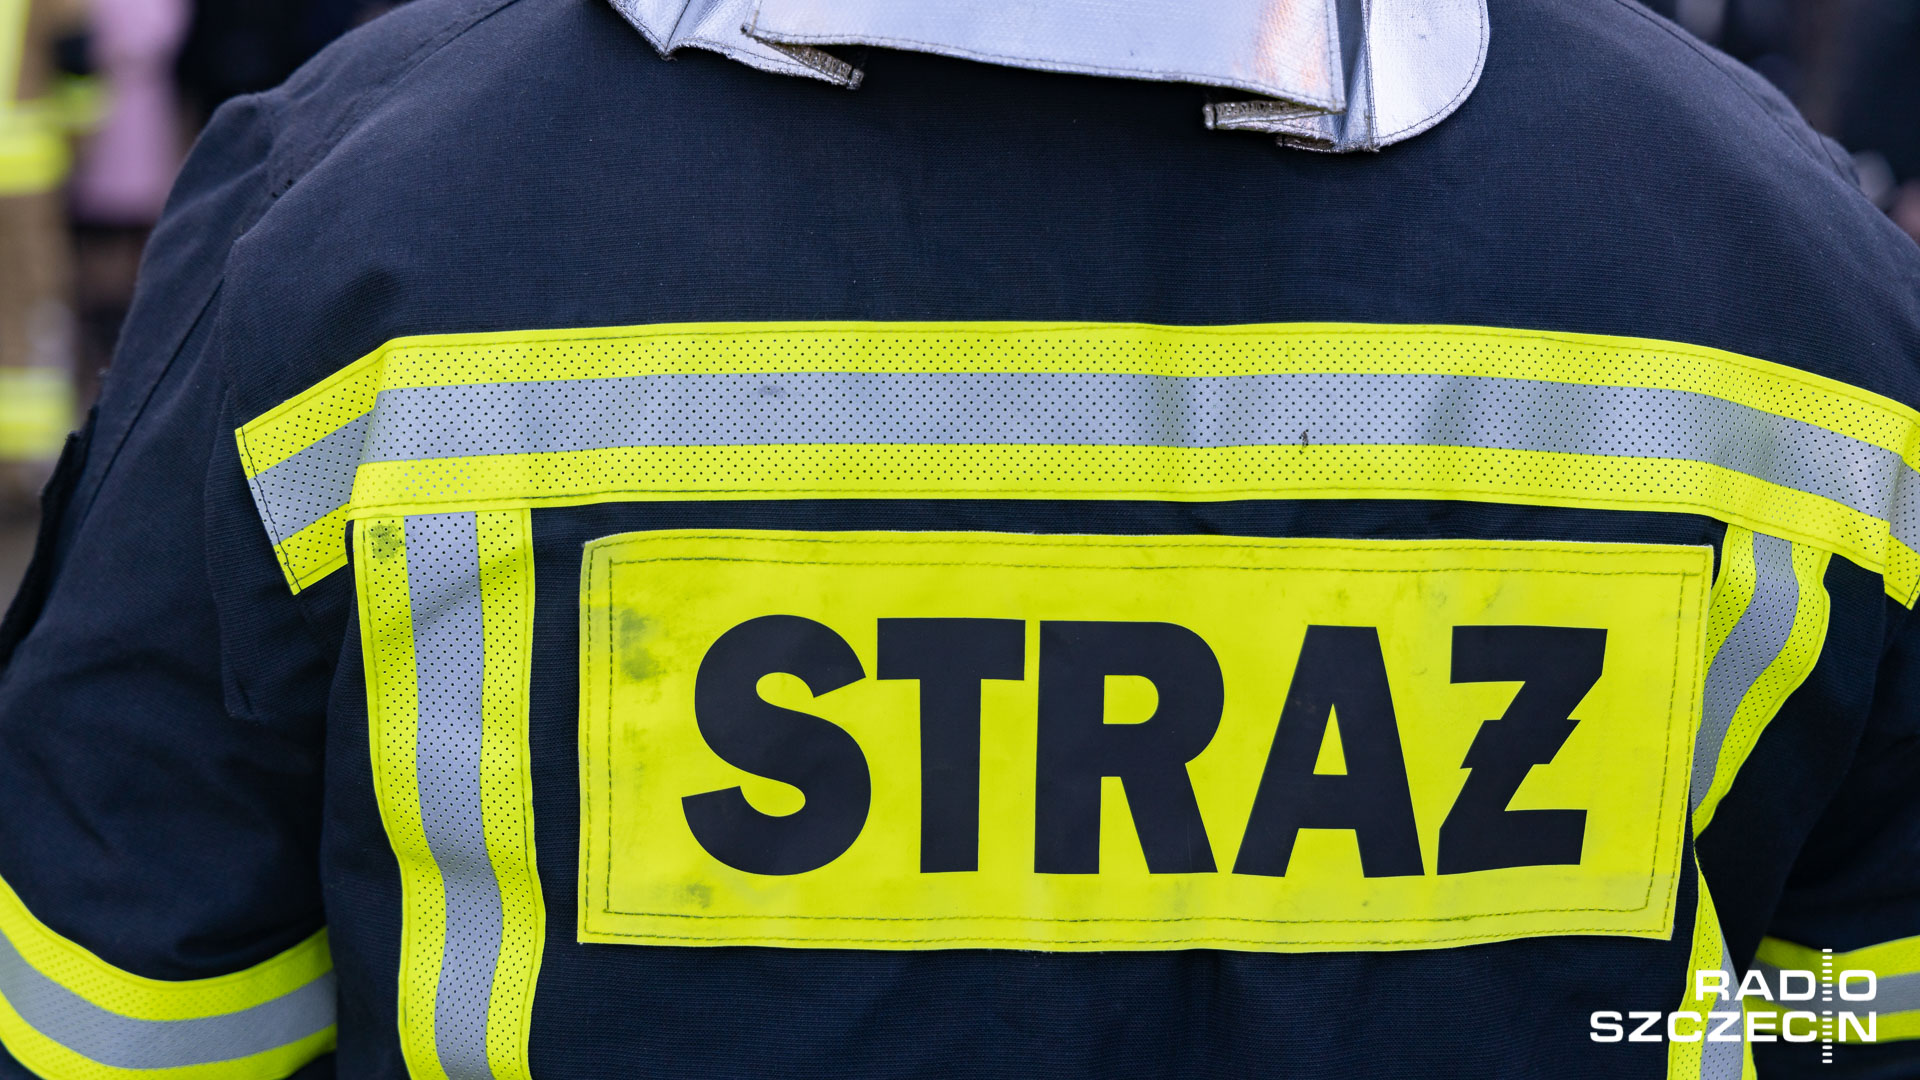 Strażacy nadal dogaszają pożar w Siemianowicach Śląskich. Wojewoda śląski Marek Wójcik poinformował, że udało się znacząco ograniczyć emisję szkodliwych substancji do środowiska. Dodał, że w walkę z bardzo intensywnym pożarem zaangażowanych było 240 strażaków.